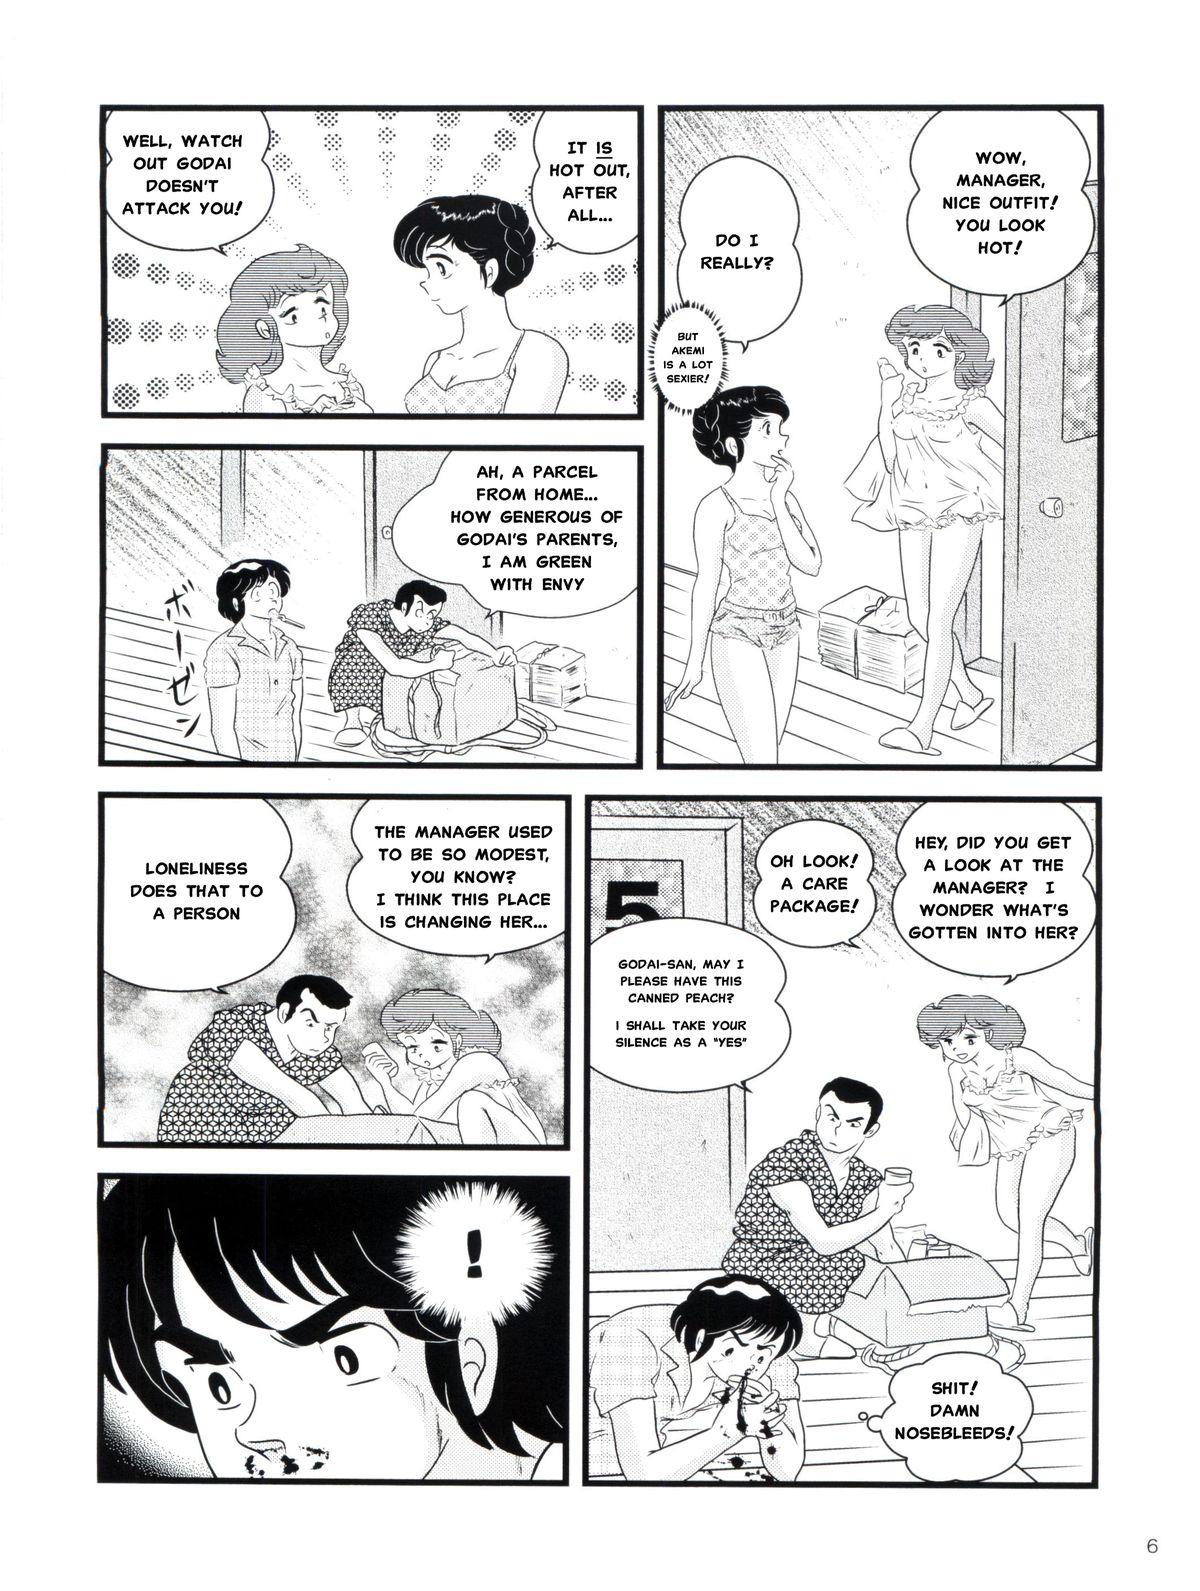 Punheta Fairy 14 - Maison ikkoku Scene - Page 5